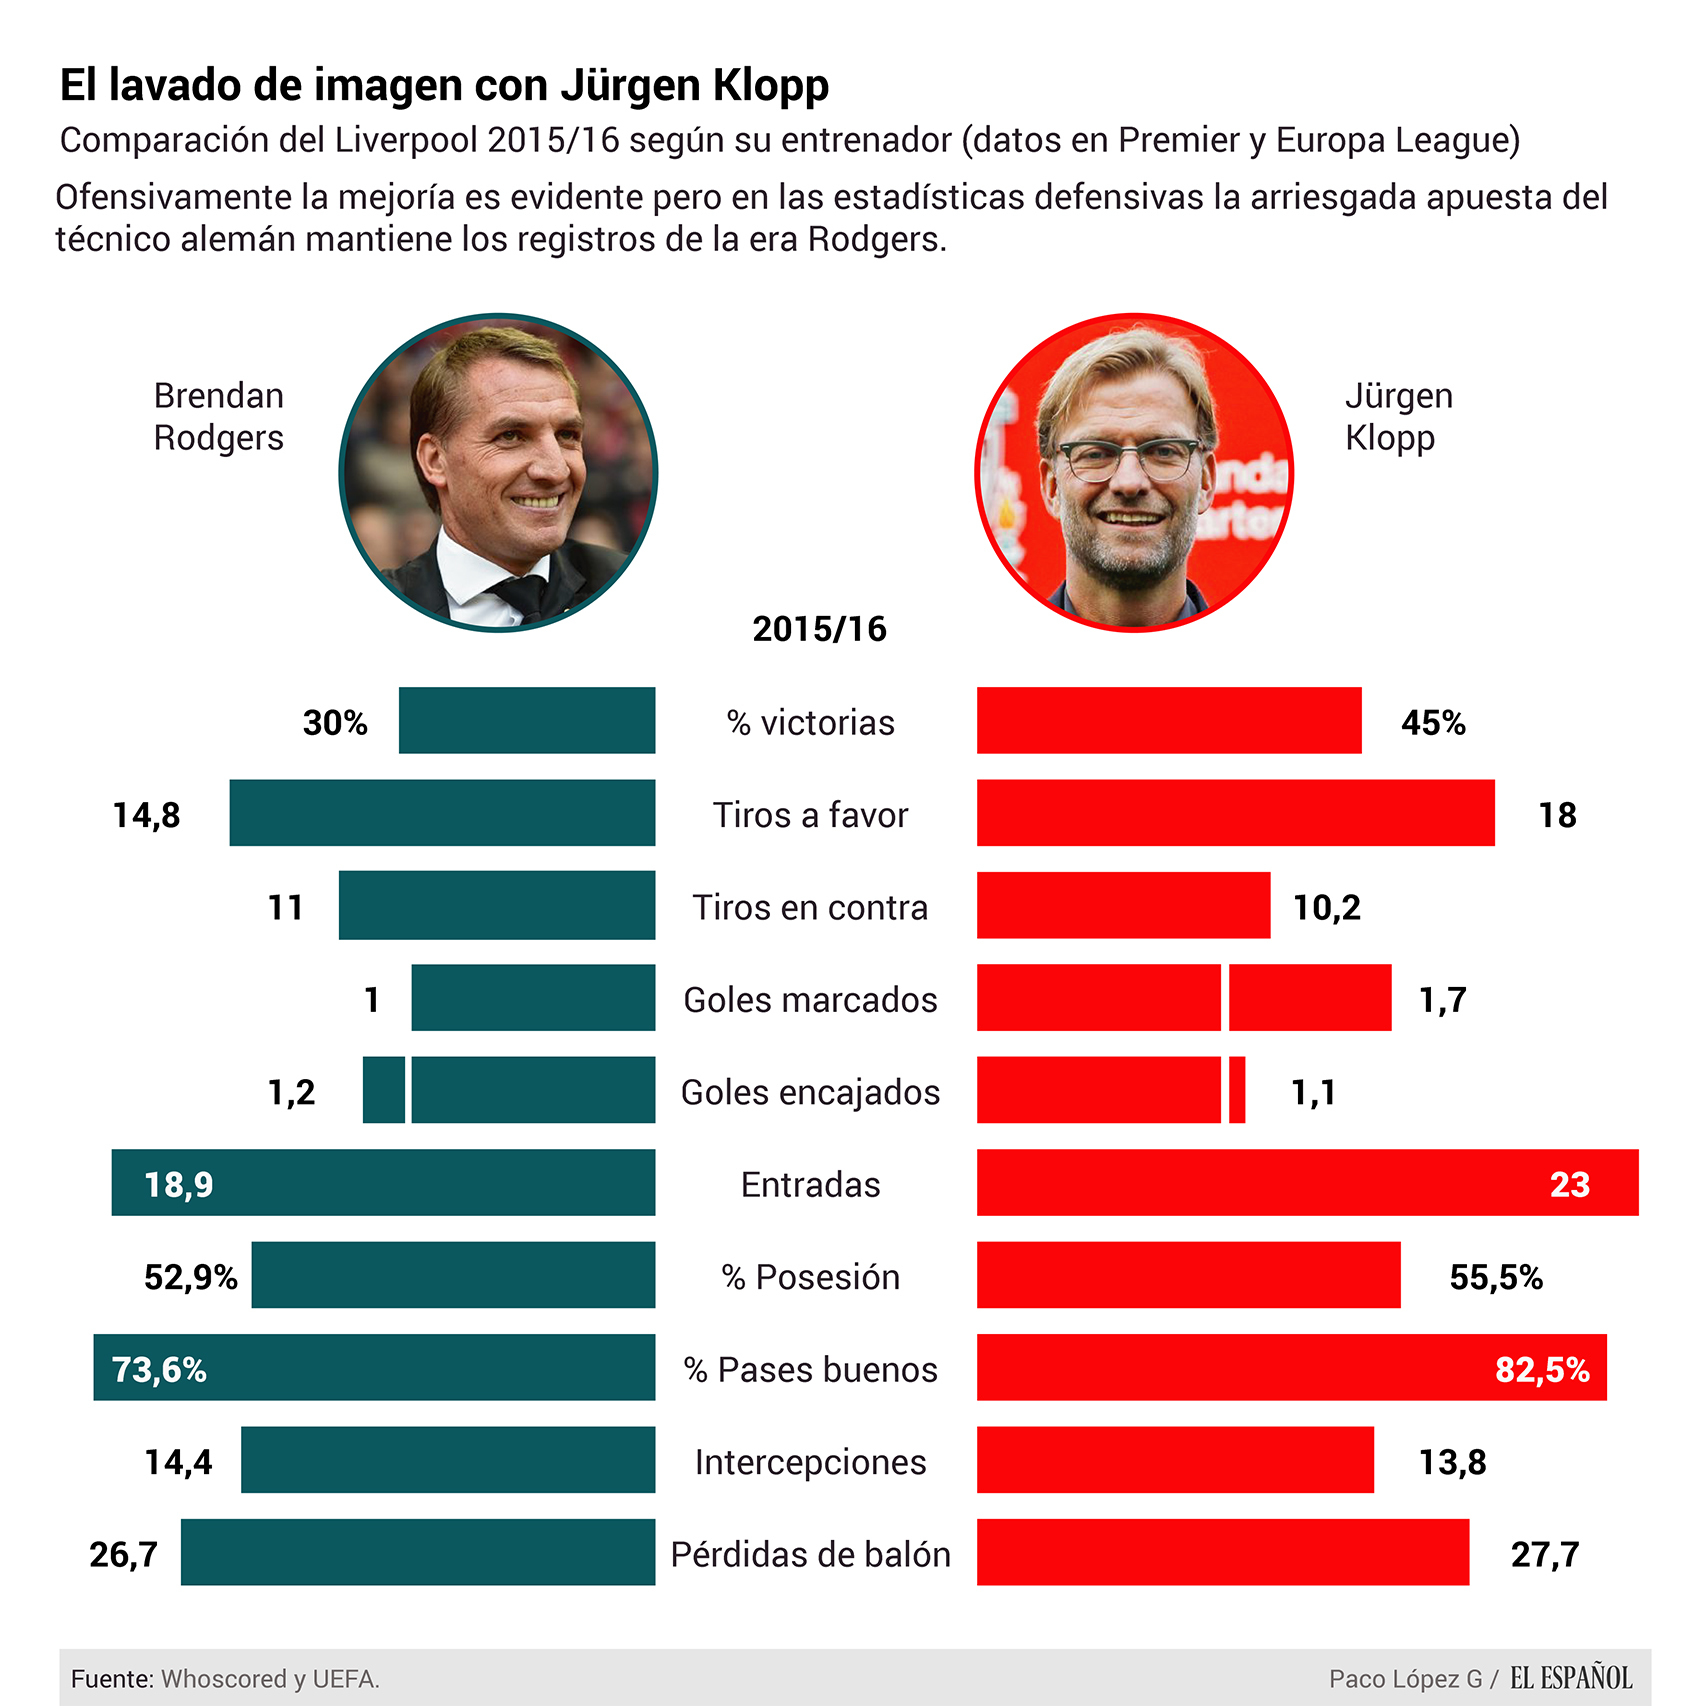 Comparativa entre el Liverpool de Brendan Rodgers y el de Jürgen Klopp.